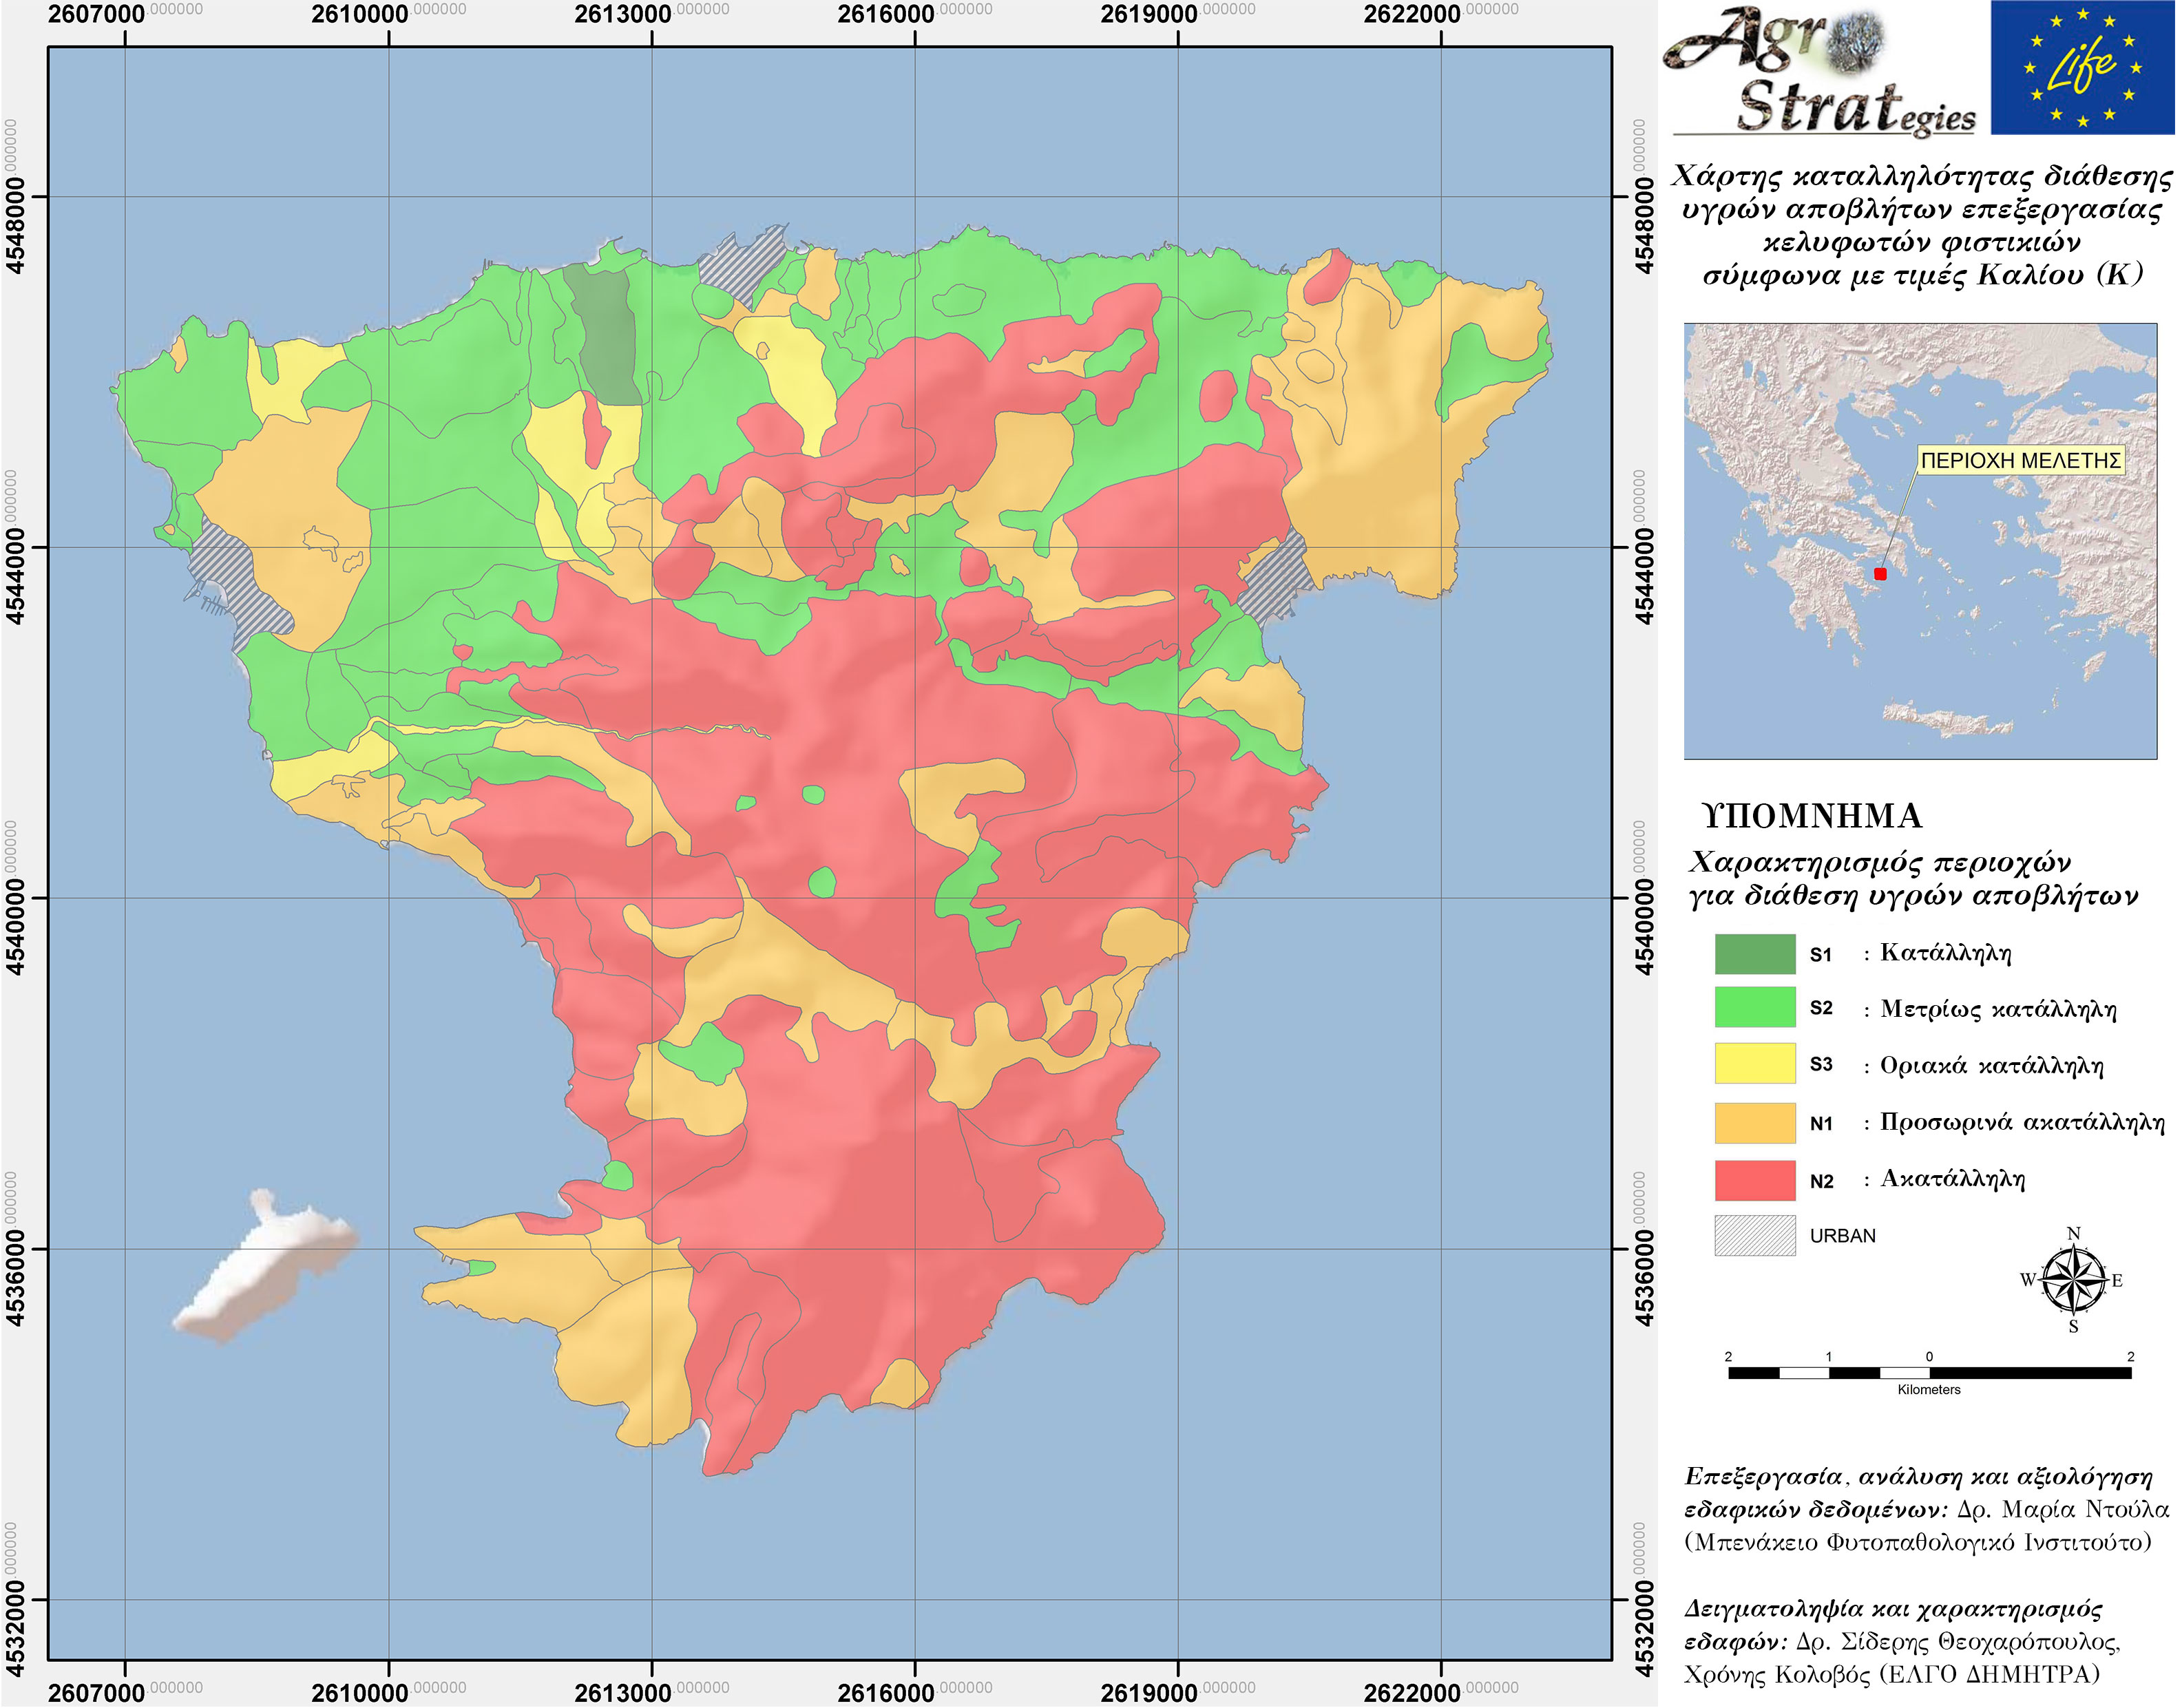 Δρ. Μ. Κ. Ντούλα.Χάρτης Καταλληλότητας Εδάφους για τη διασπορά υγρών αποβλήτων κελυφωτών φυστικιών ν. Αίγινας ως προς την περιεκτικότητα σε ανταλλάξιμο Κάλιο (LIFE-AgroStrat)